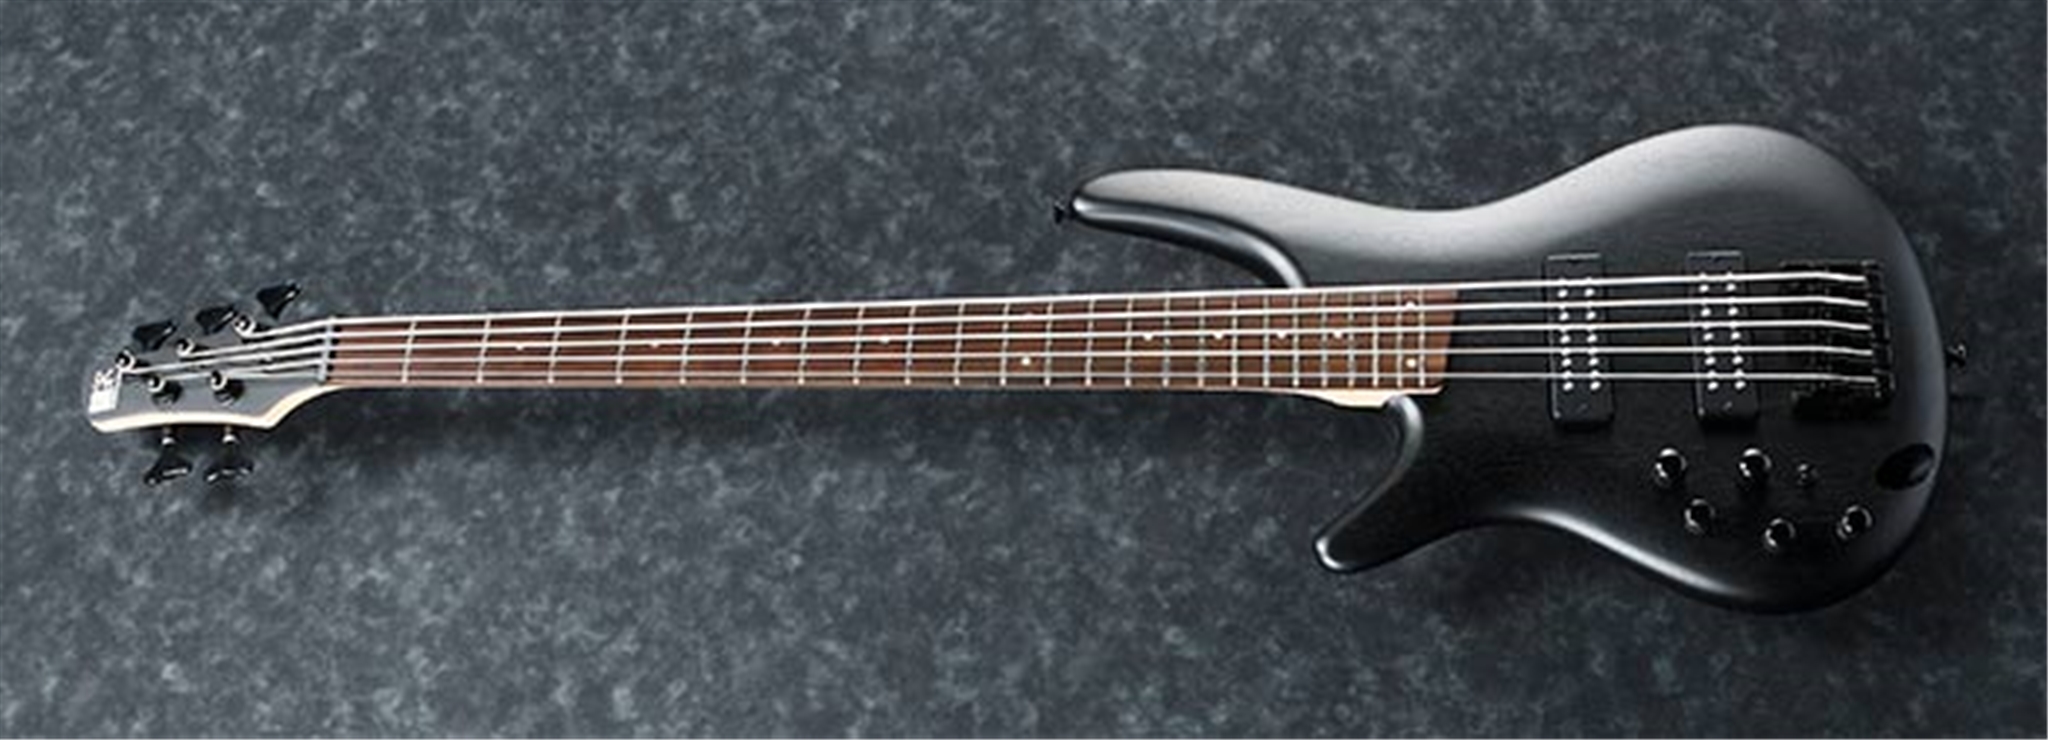 Ibanez SR305EBL Weathered Black Left Handed 5-String Electric Bass Guitar